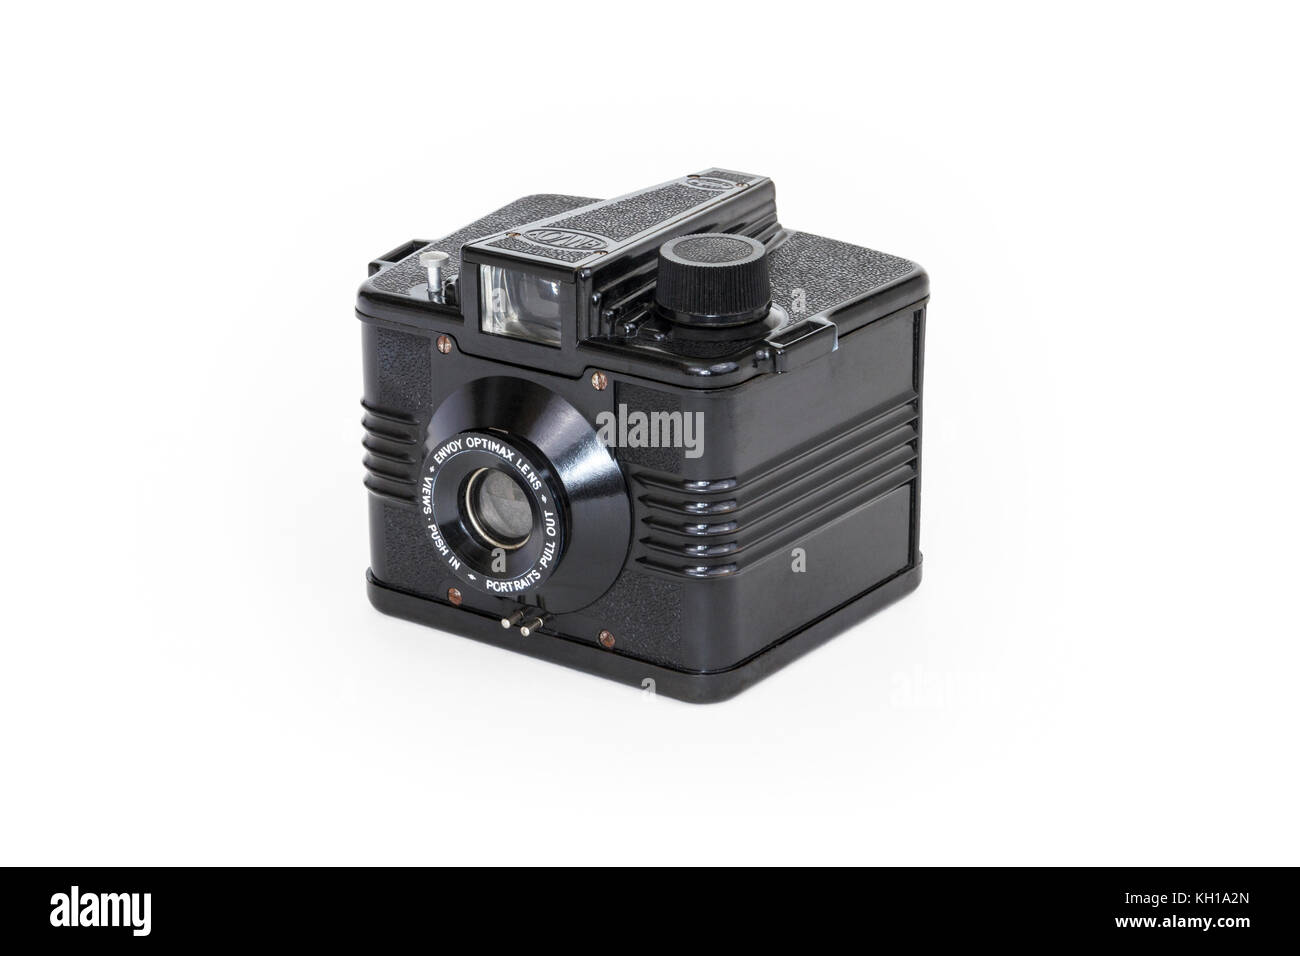 Ilford Envoy 120/620 pellicola in rotolo telecamera box, bachelite, c1953, Optimax lente, isolata contro uno sfondo bianco Foto Stock